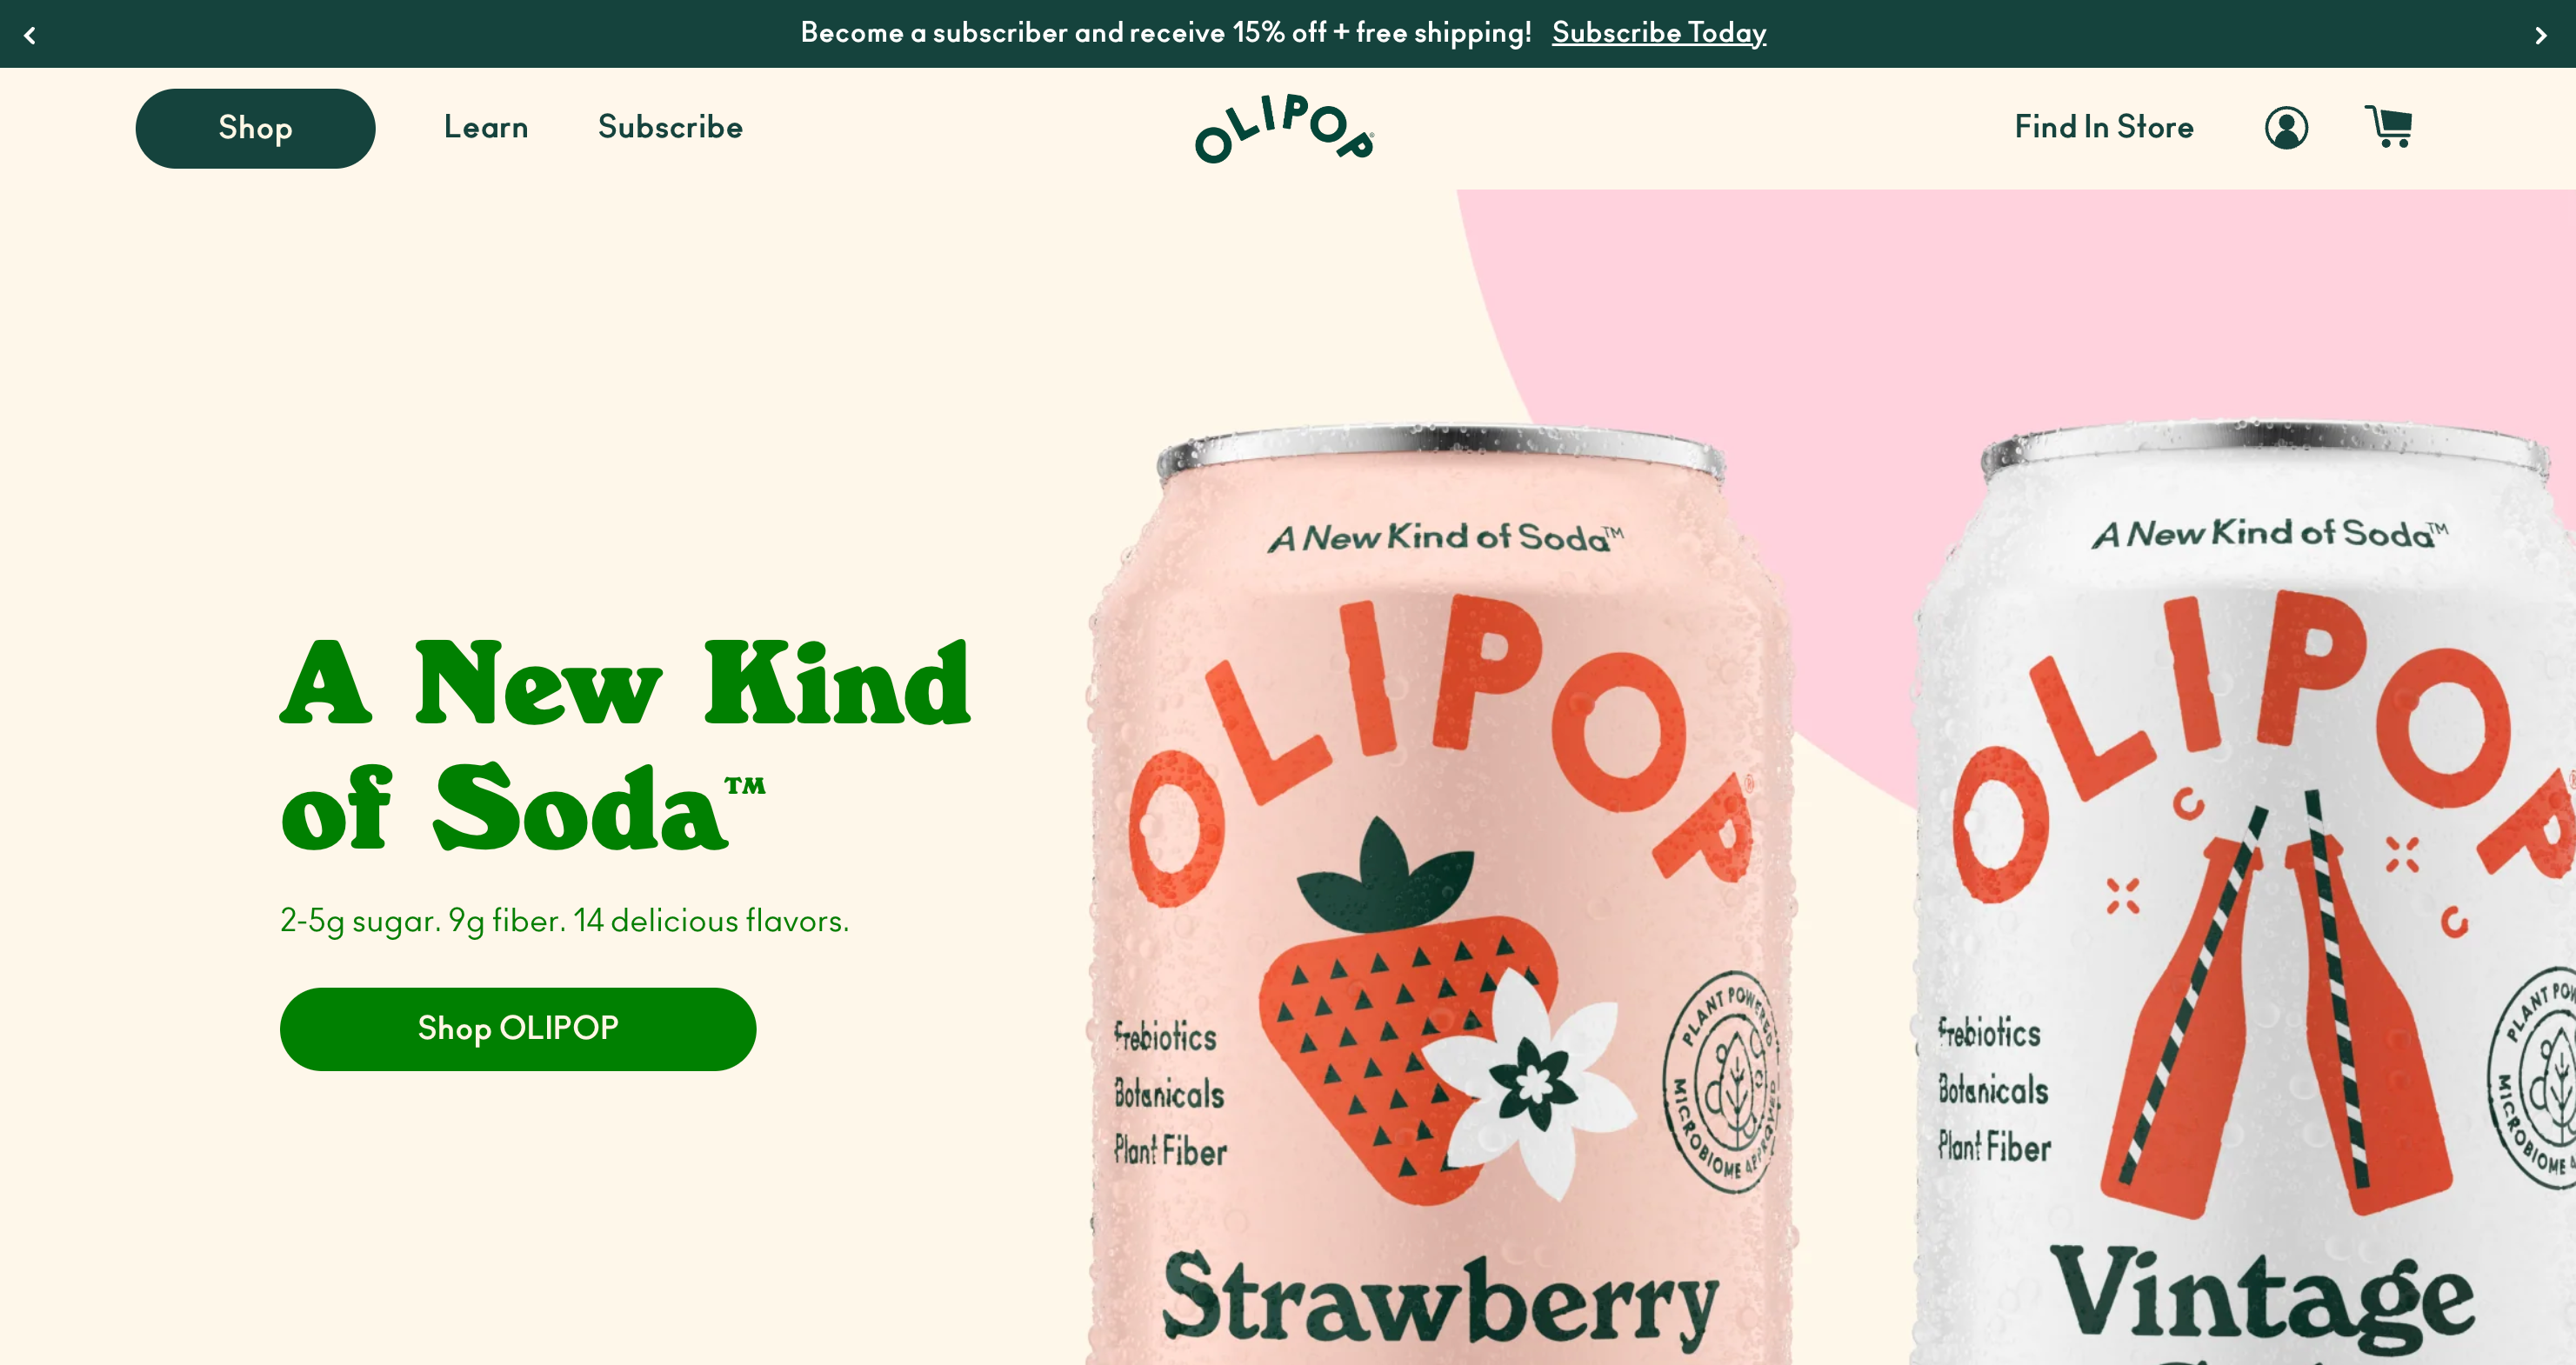 Olipop 品牌的电子商务主页